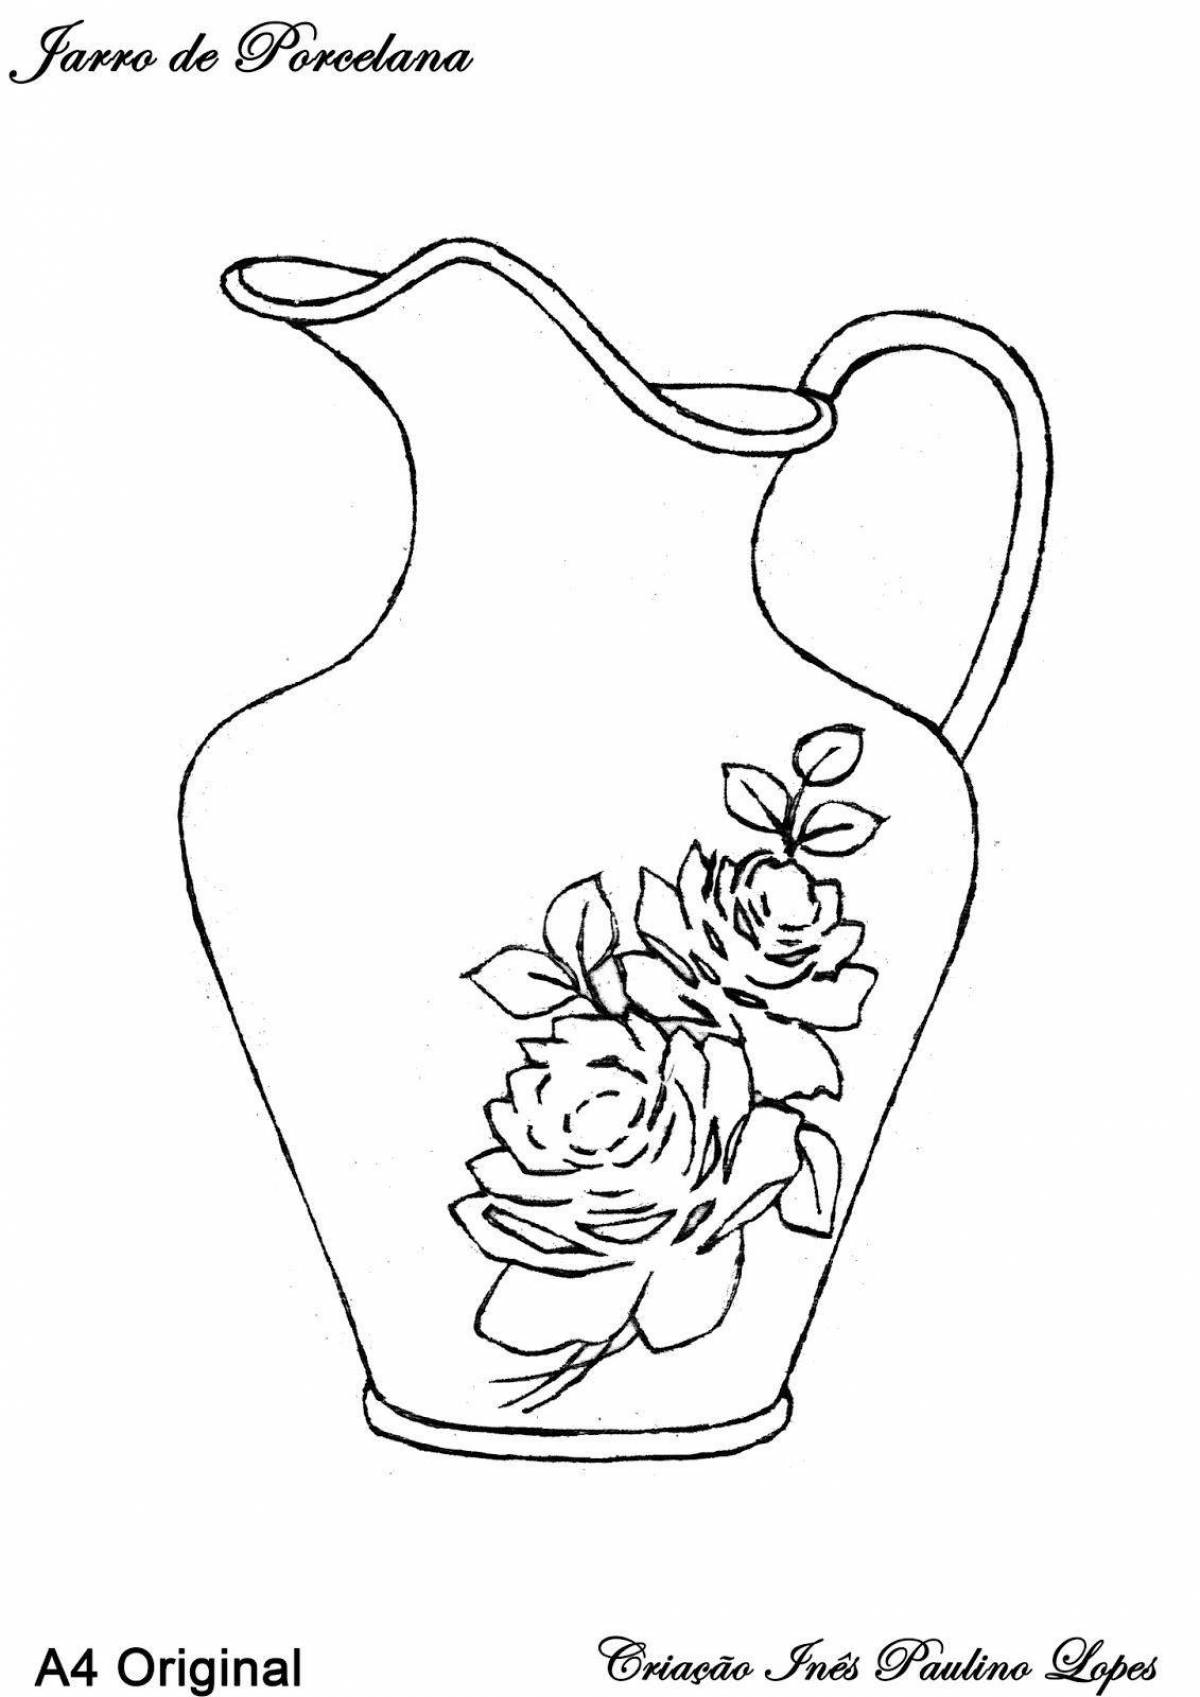 Colouring awesome Gzhel vase